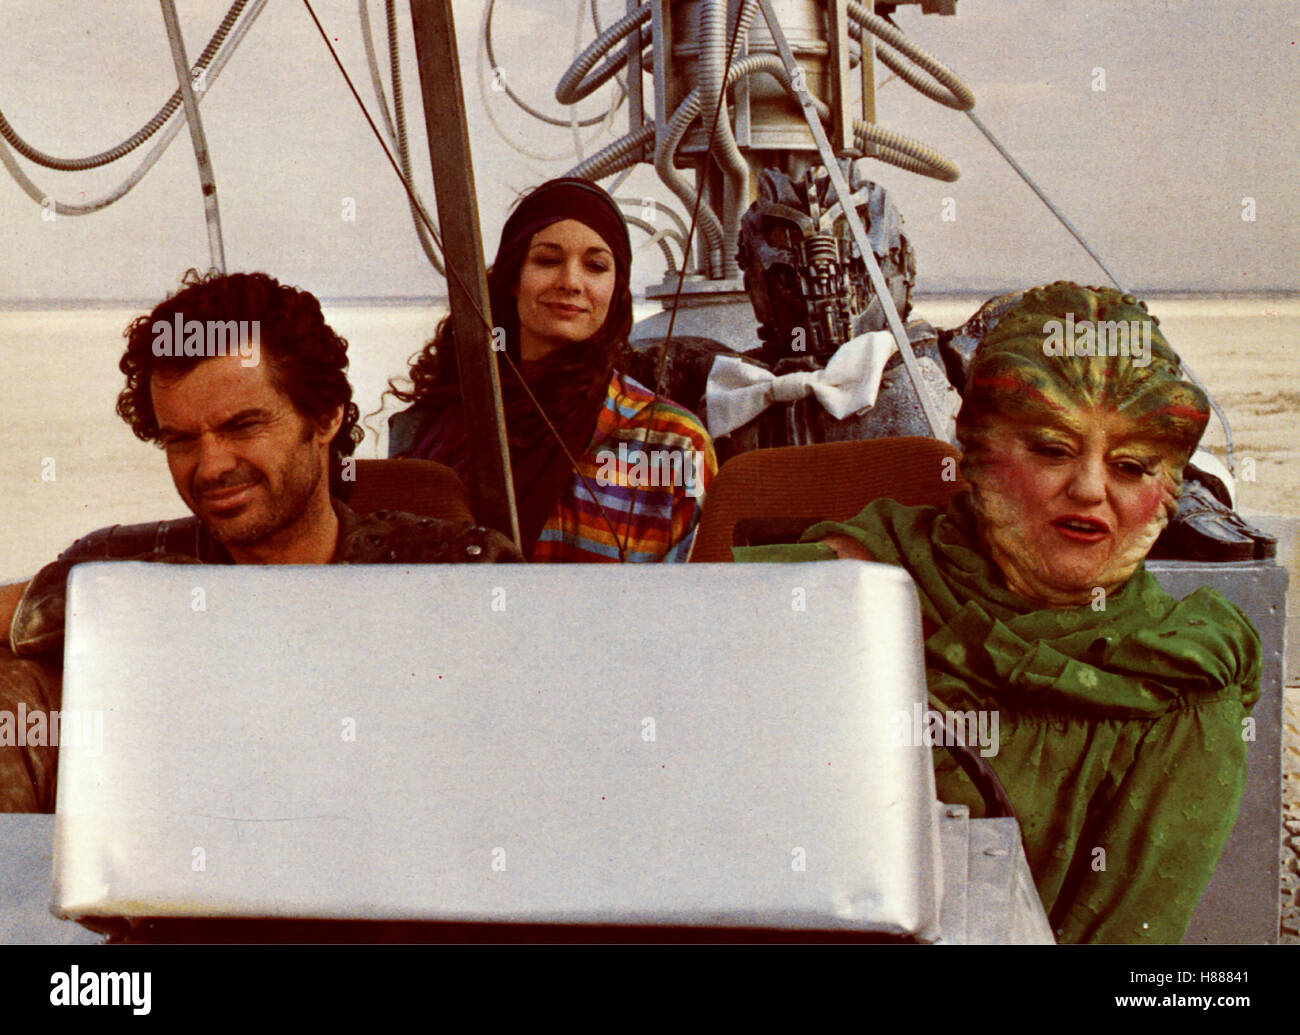 Krieg der Eispiraten, (THE ICE PIRATES), USA 1984, Regie: Stewart Raffill, ROBERT URICH, MARY CROSBY, MARCIA LEWIS Stichwort: Solarmobil Stock Photo